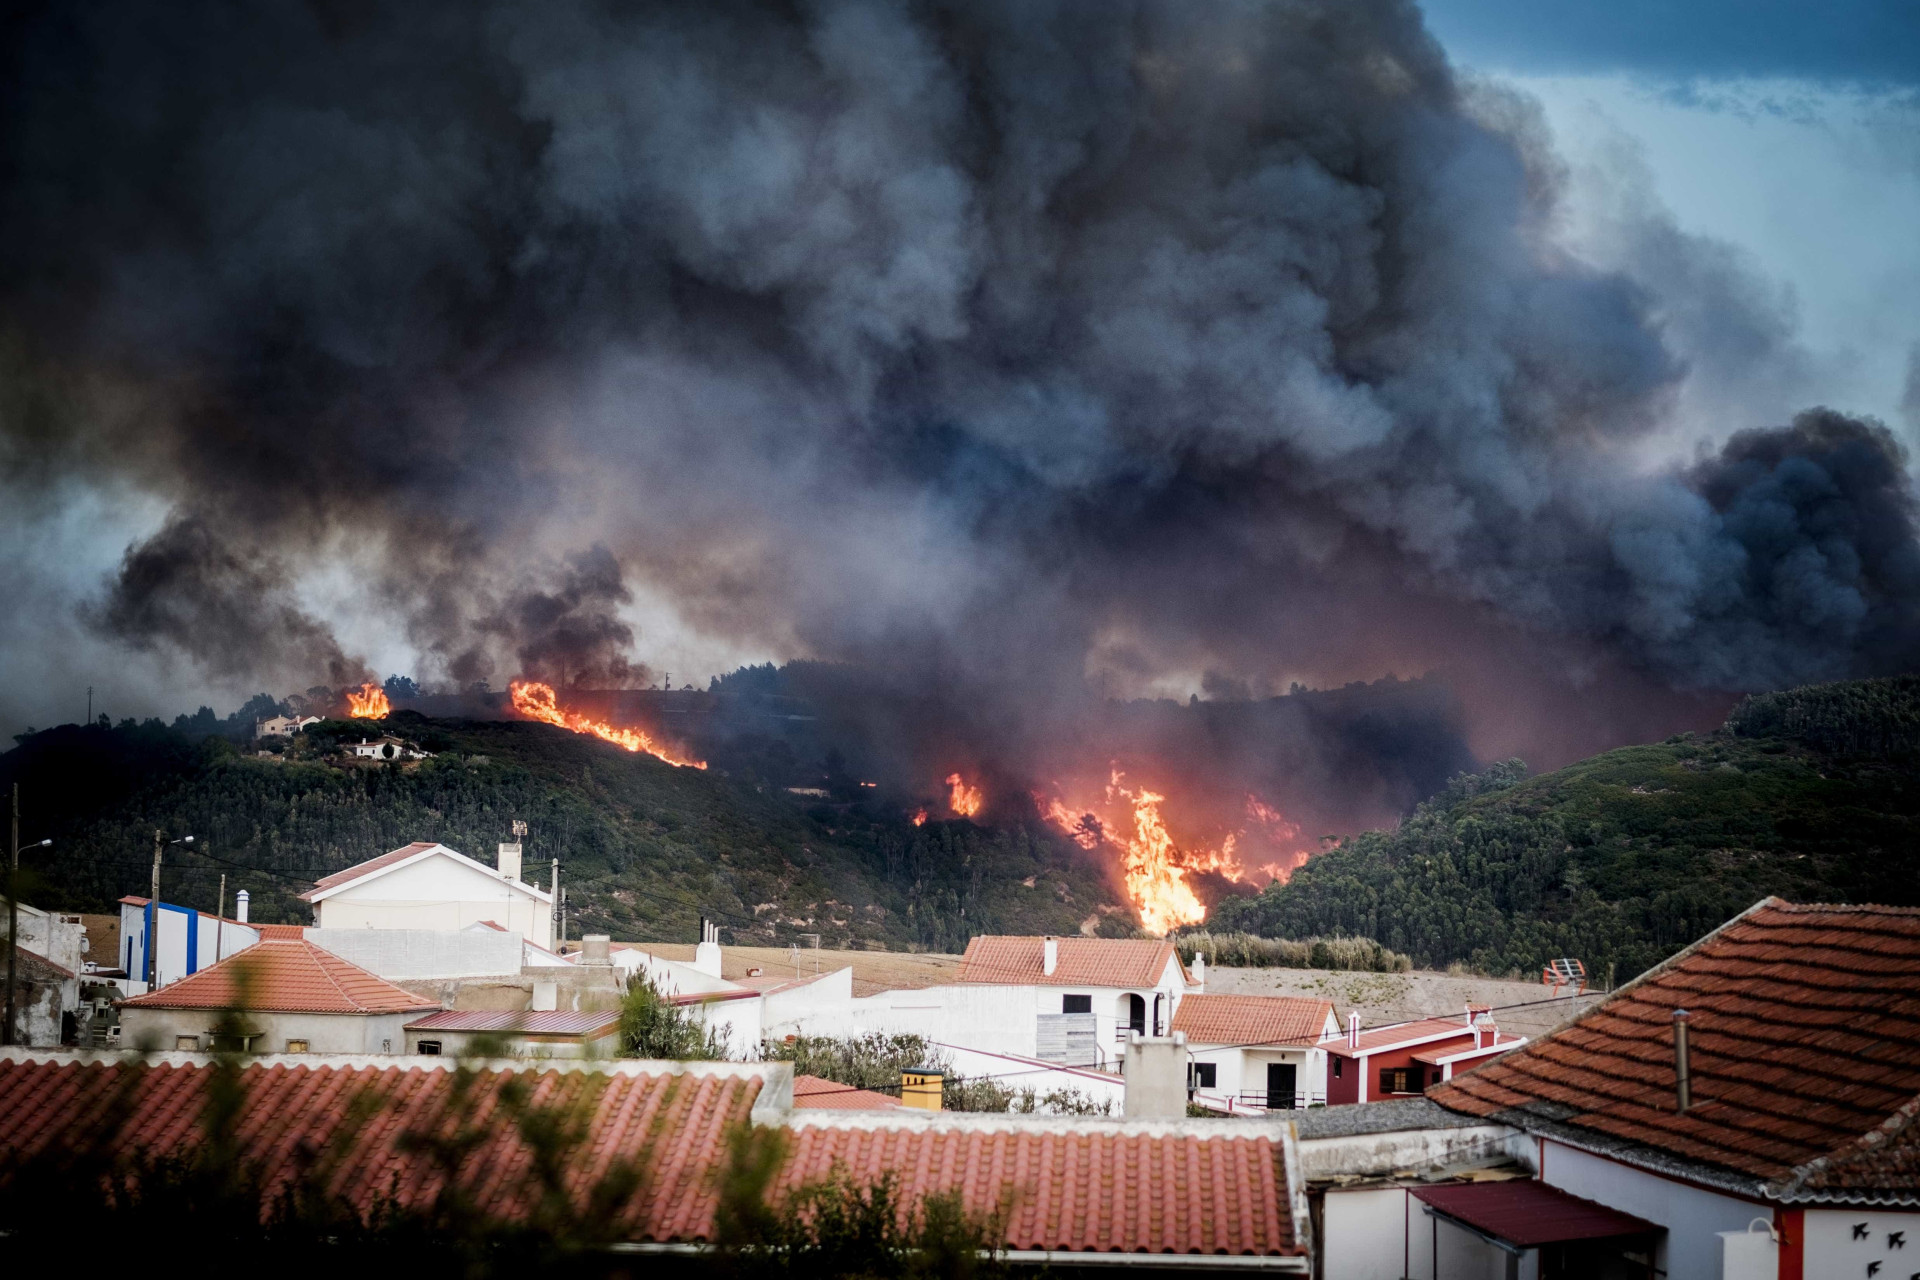 Оперативный мониторинг пожаров в Португалии для МЧС России (18.06.17)